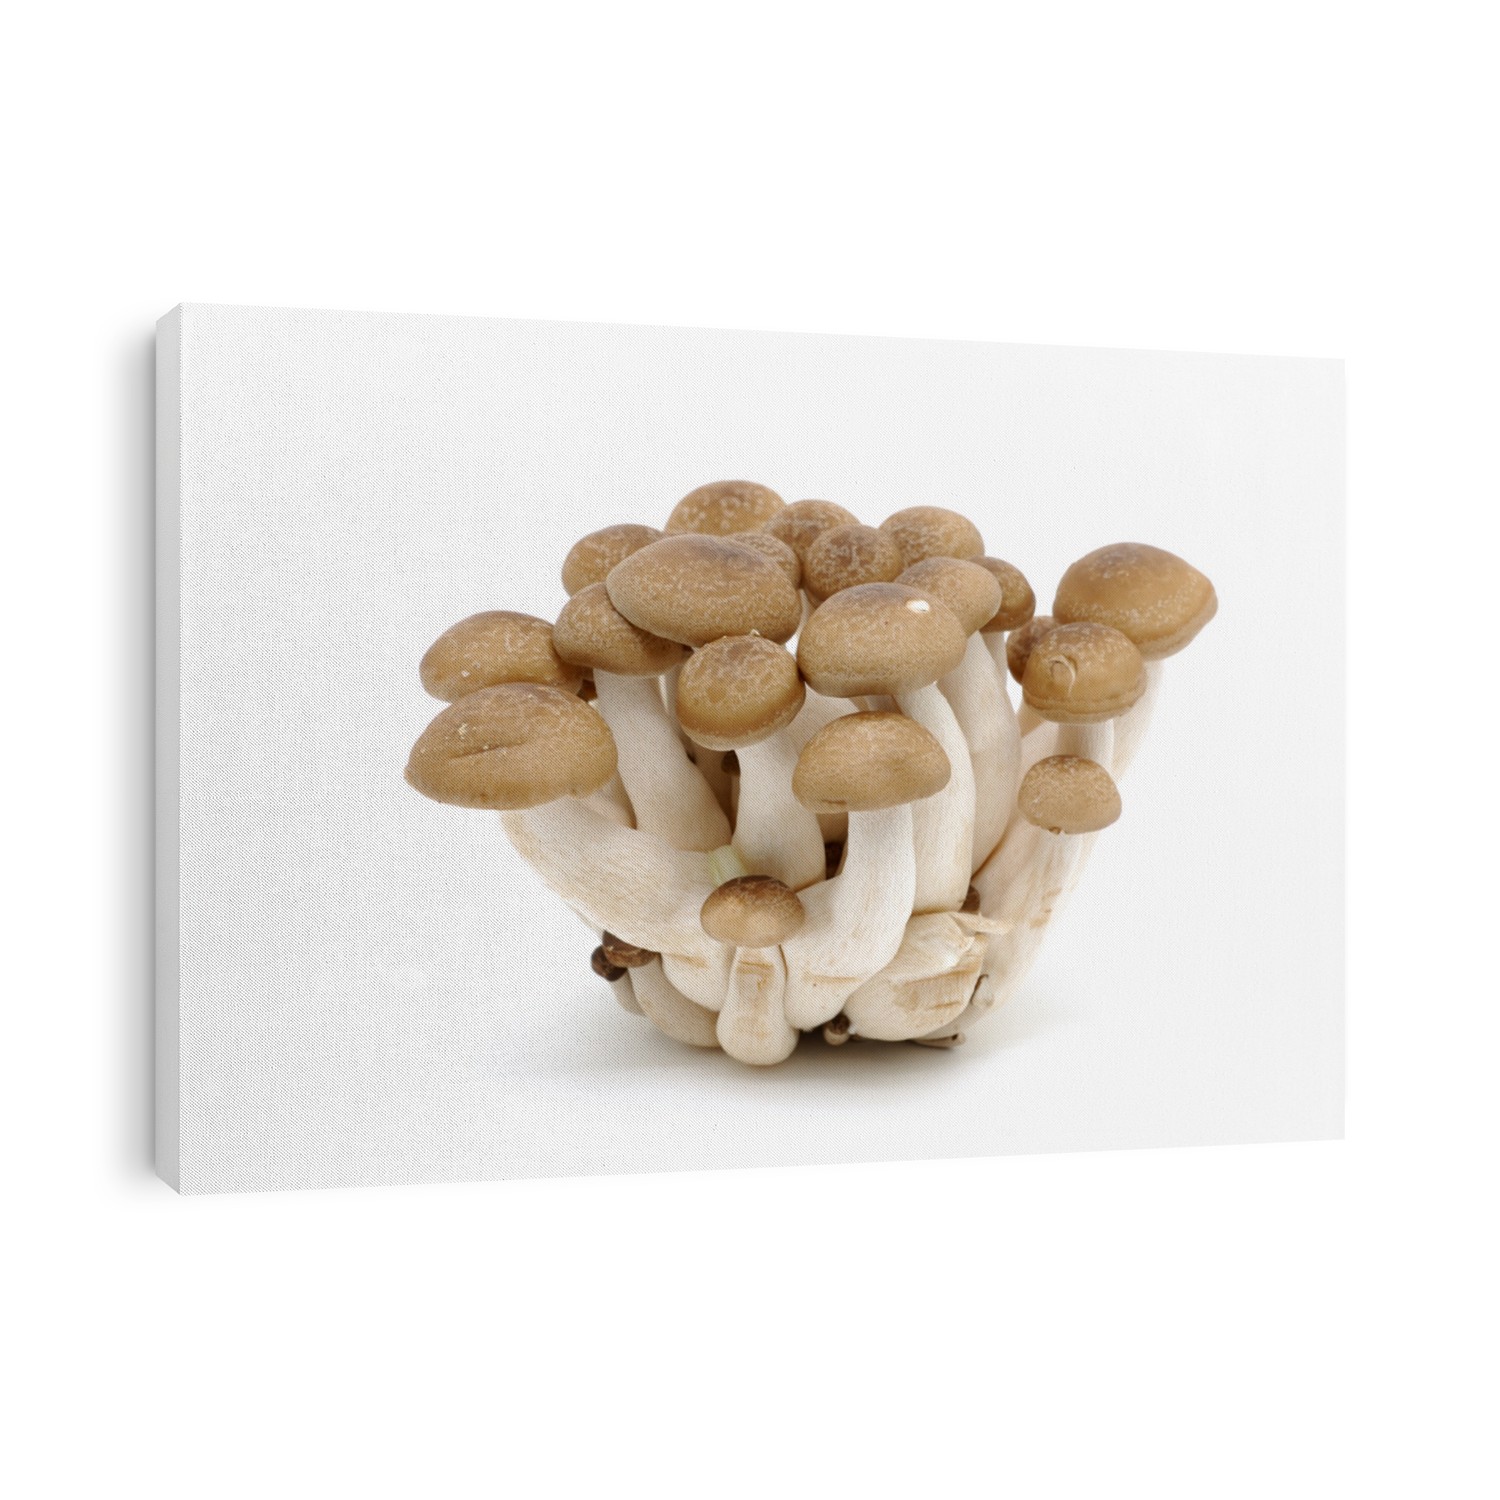 Japanese mushrooms (Bunashimeji) in isolated white background